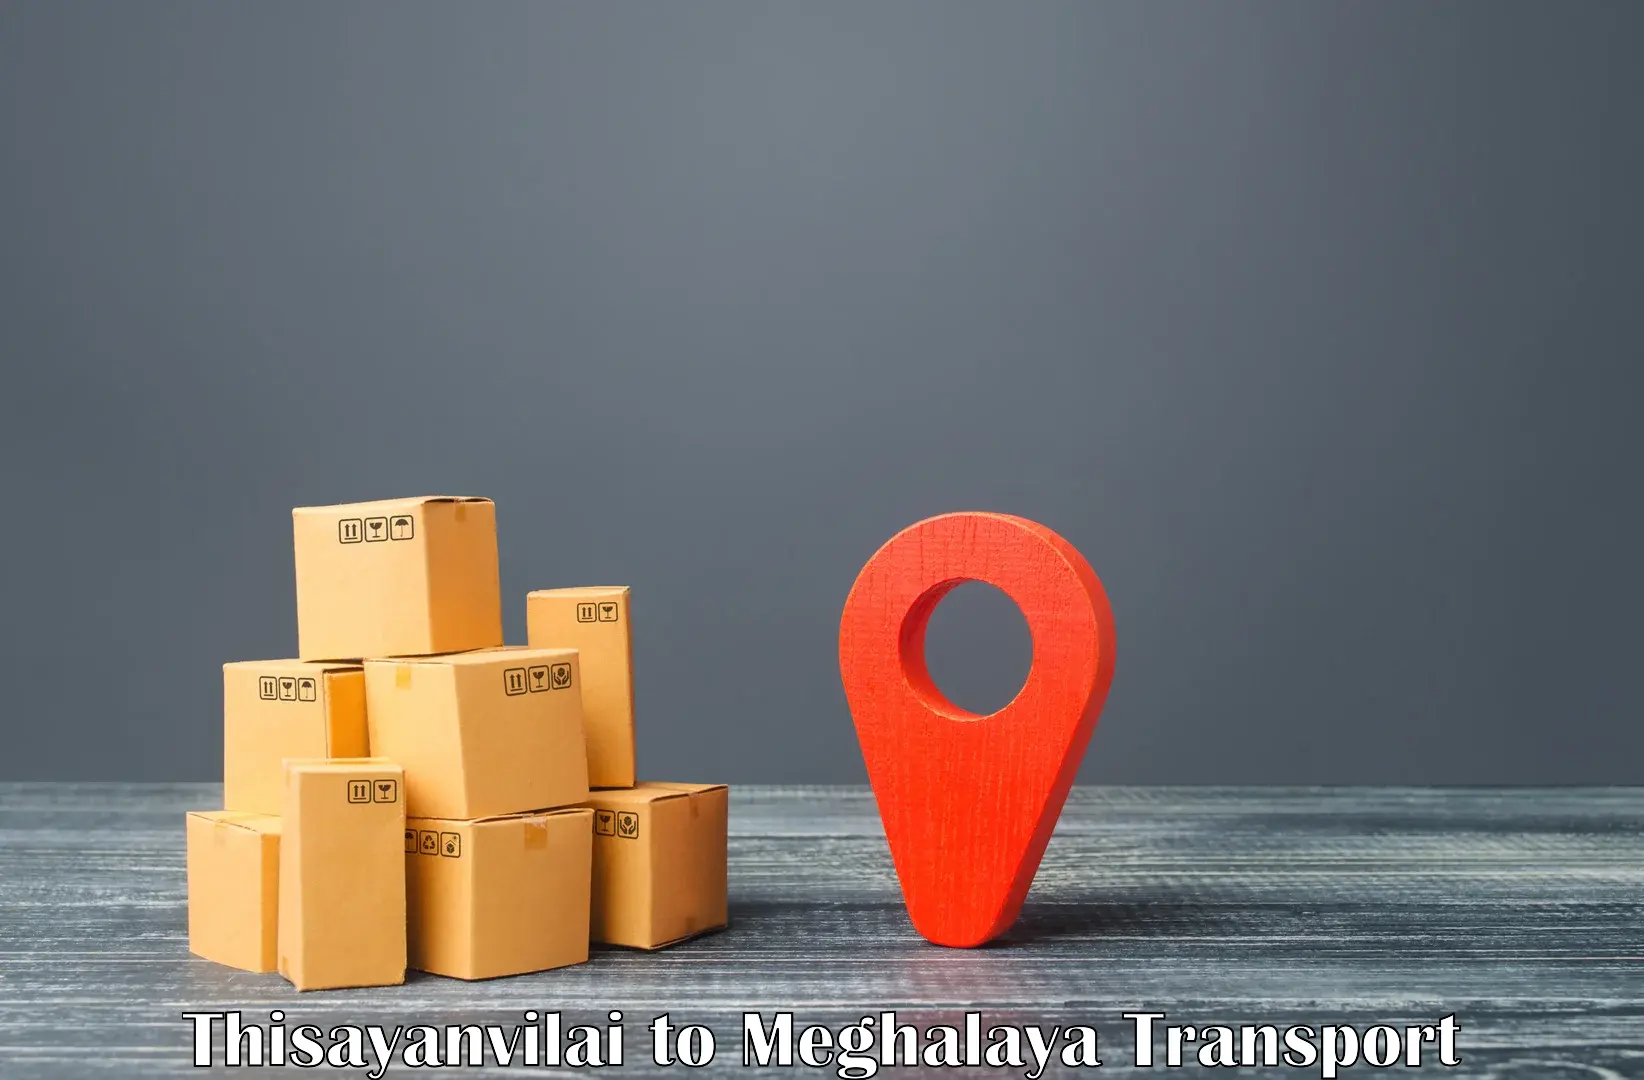 Shipping partner Thisayanvilai to Rongjeng